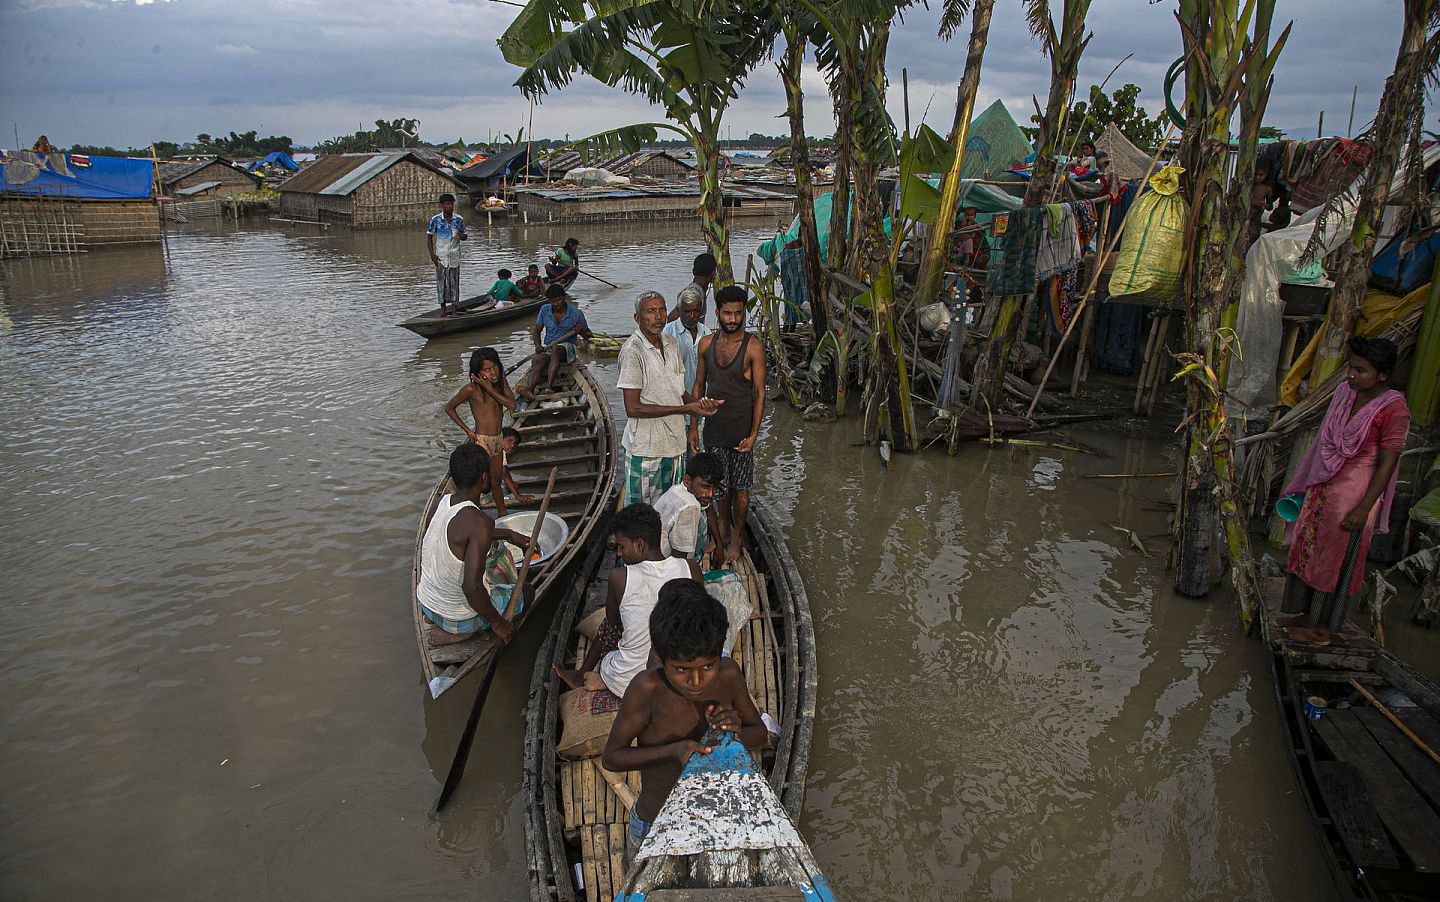 雅鲁藏布江的降强水经常给沿岸的印度居民带来洪灾。图为2020年7月印度阿萨姆邦（Assam）受洪灾影响的人们在被淹没的房屋附近的船上躲避。 (AP )